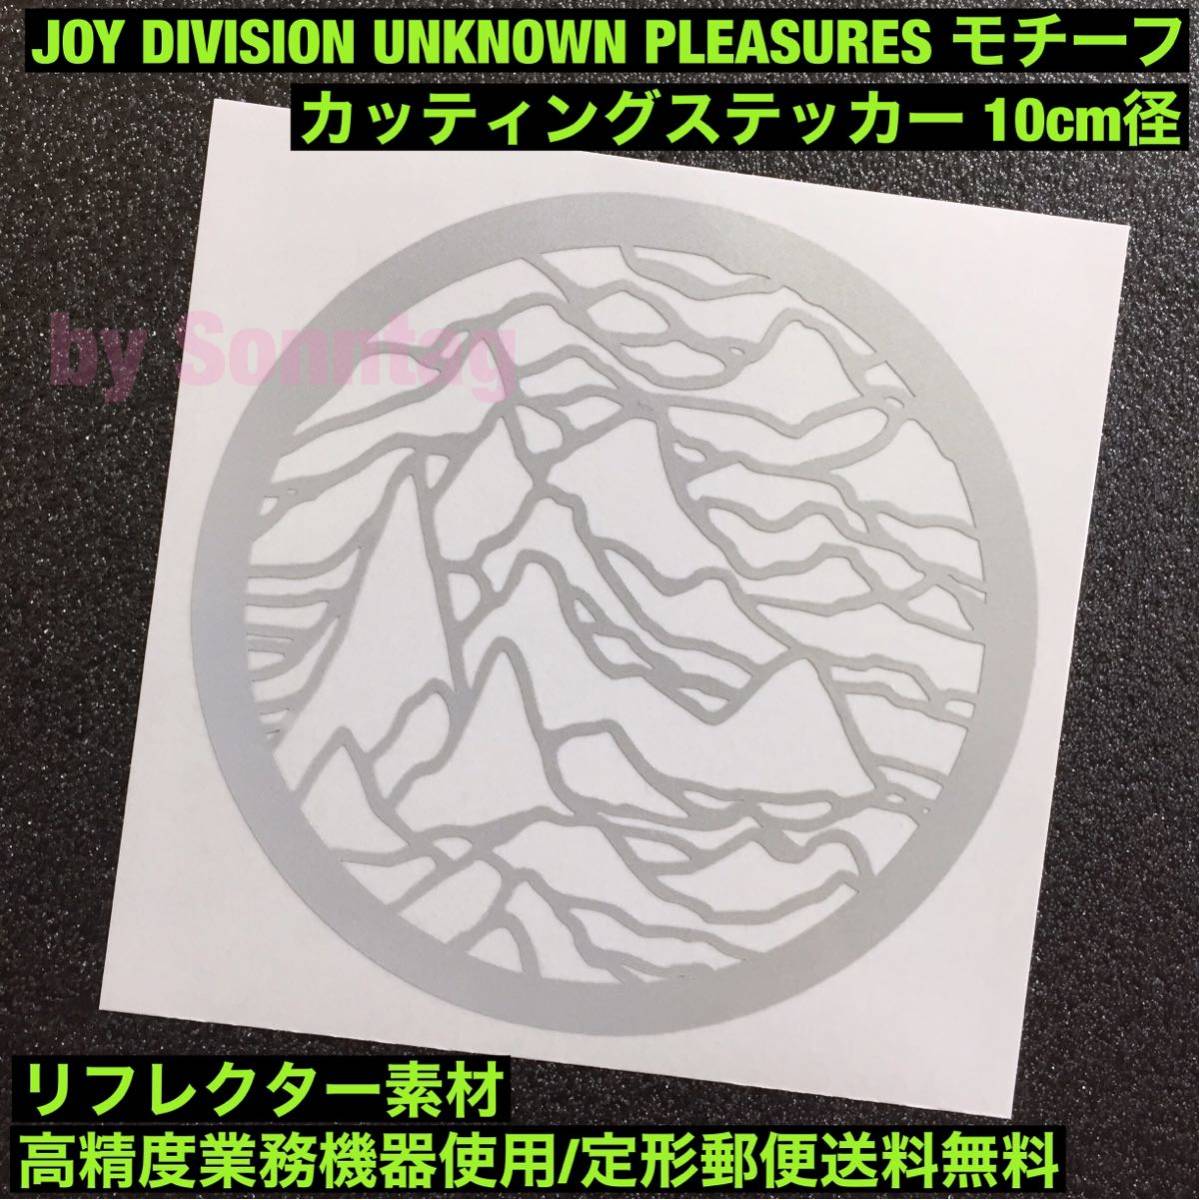 【定形郵便送料無料】 リフレクター素材 10cm径 Joy Division Unknown Pleasures モチーフ カッティングステッカー ジョイ ディヴィジョン_画像1